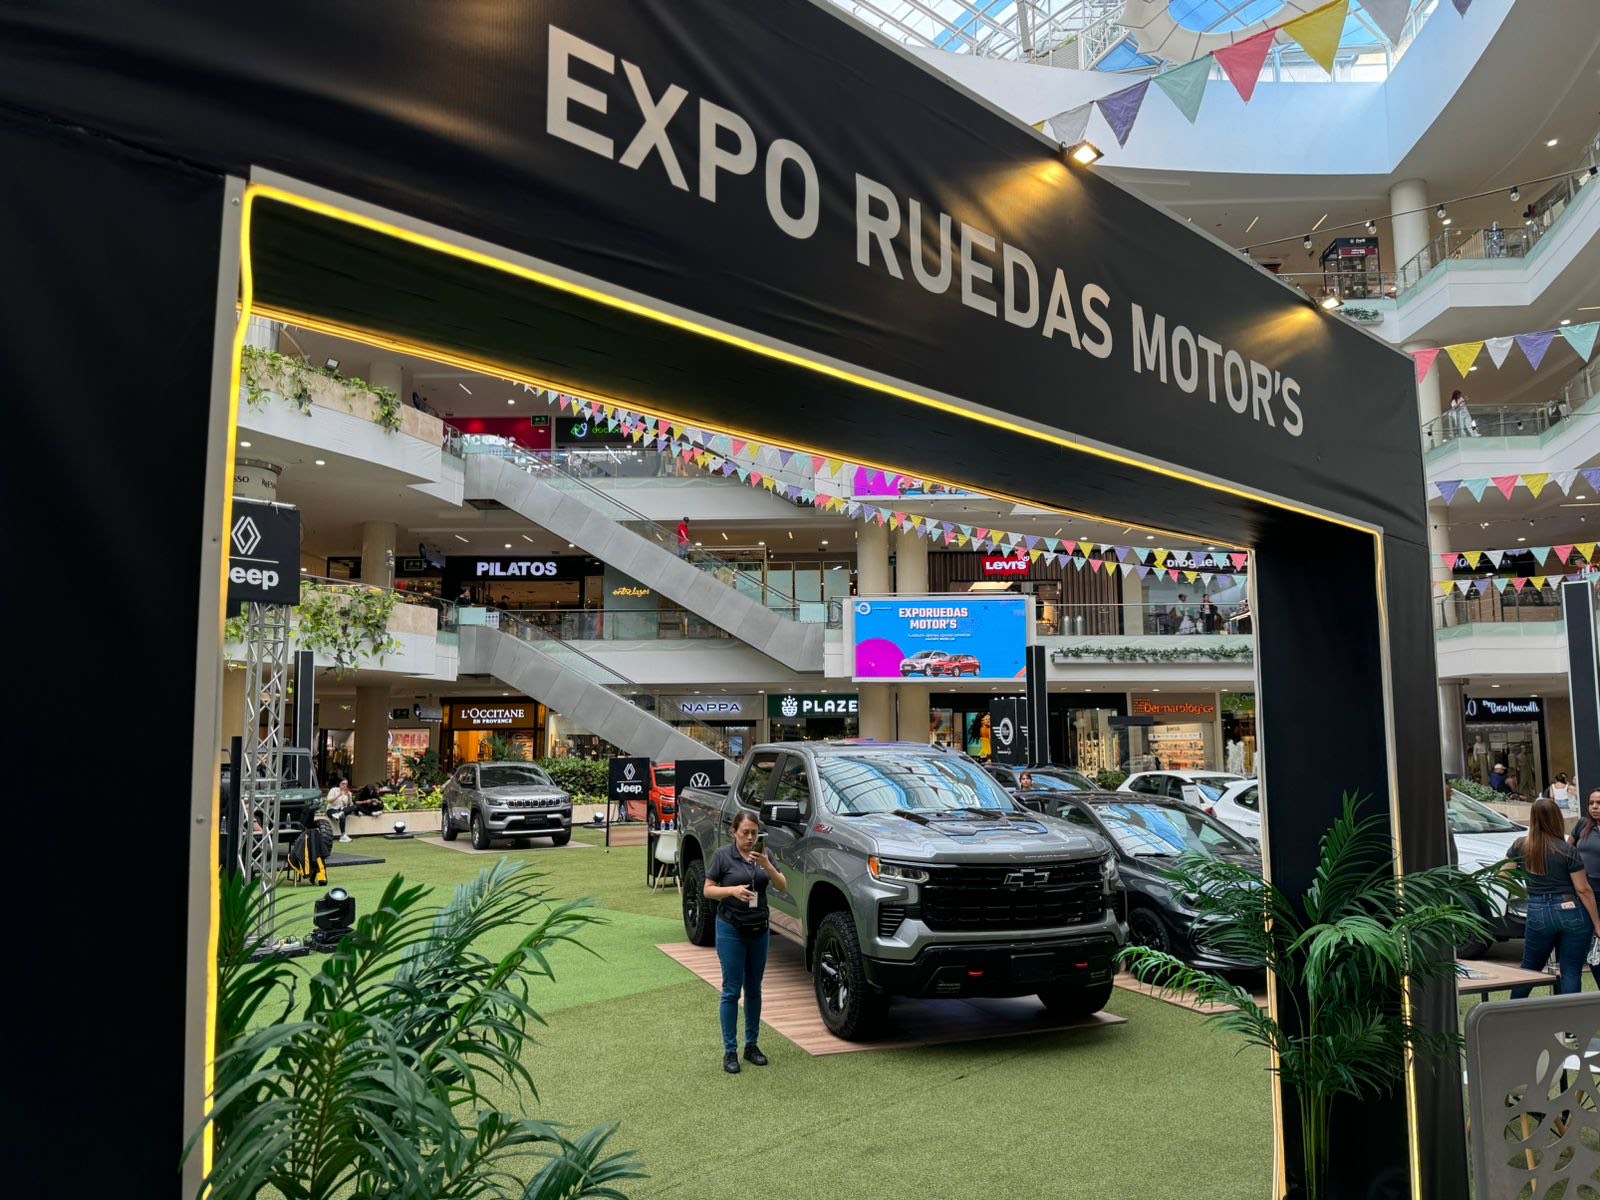 Expo Ruedas